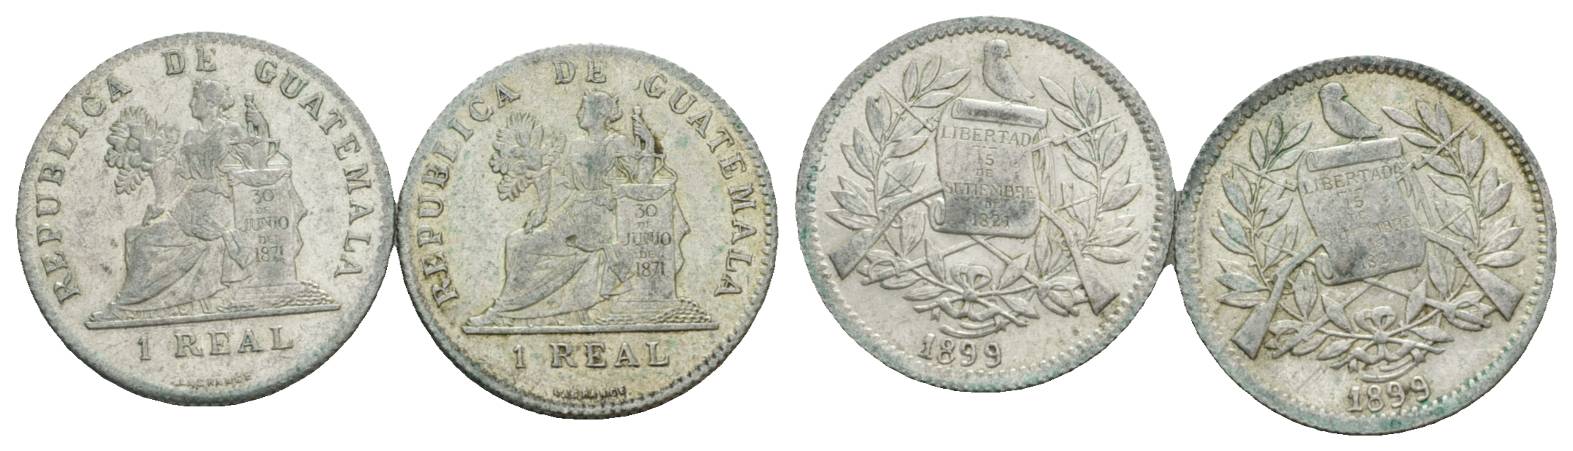  Guatemala, Real, 1899 (2 Stück)   